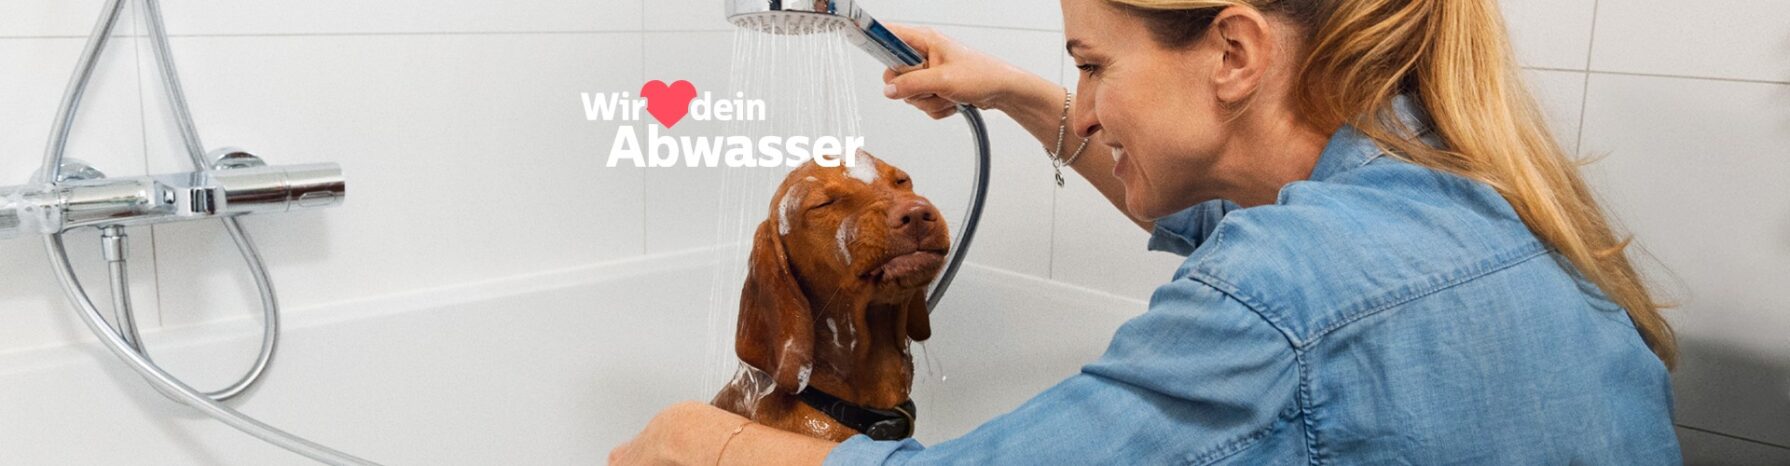 Junge Frau badet Hund und Wir lieben dein Abwasser Schriftzug